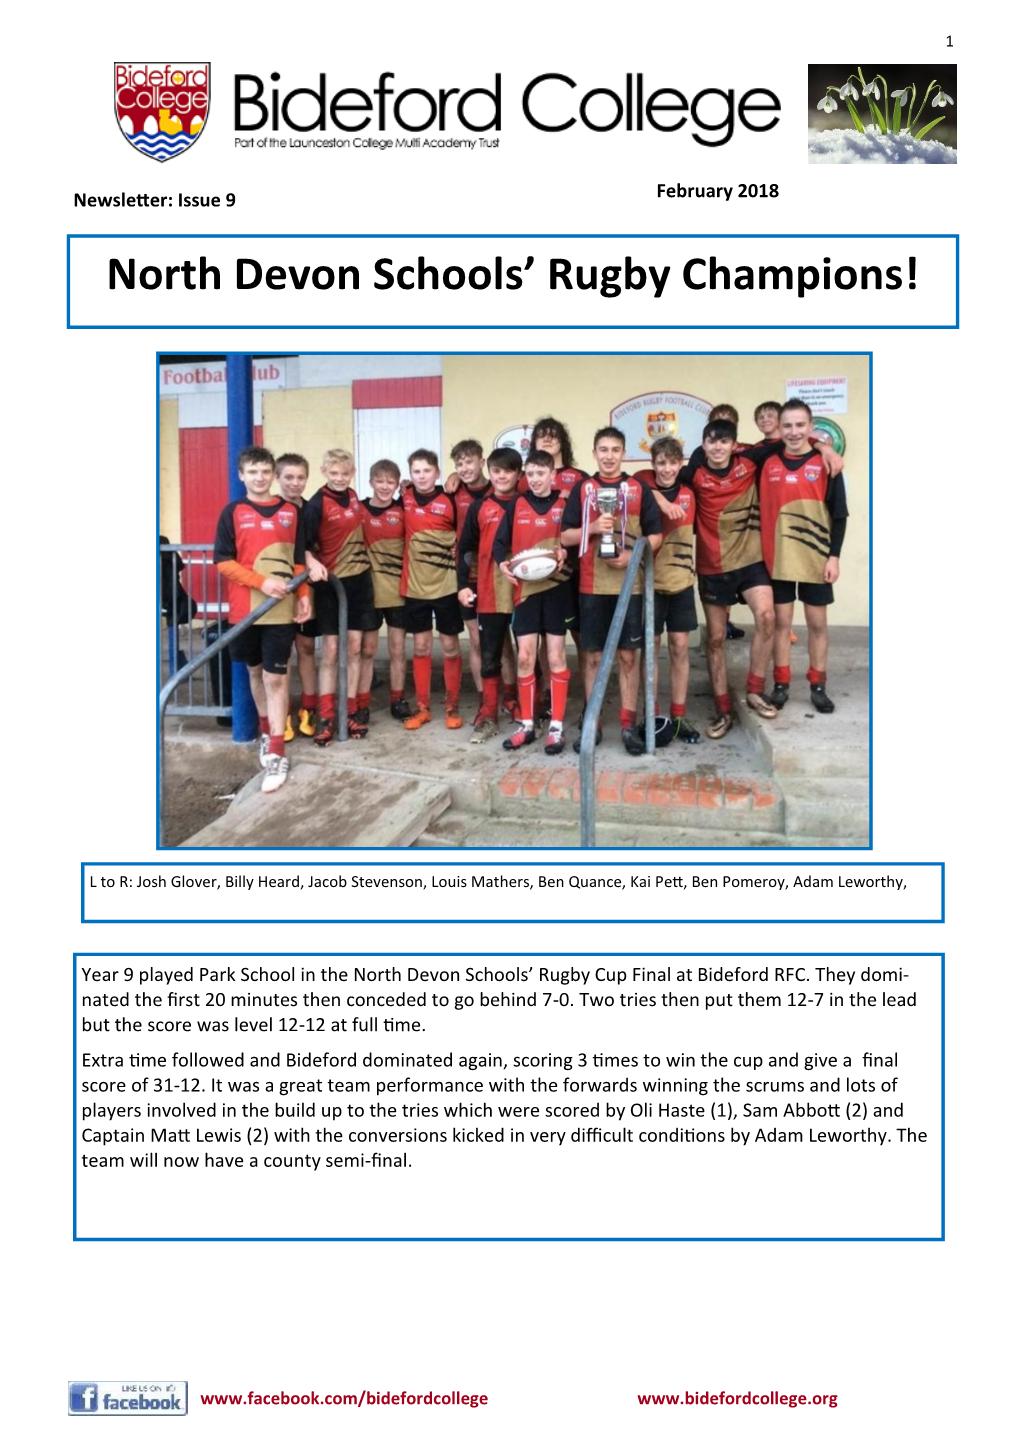 North Devon Schools' Rugby Champions!